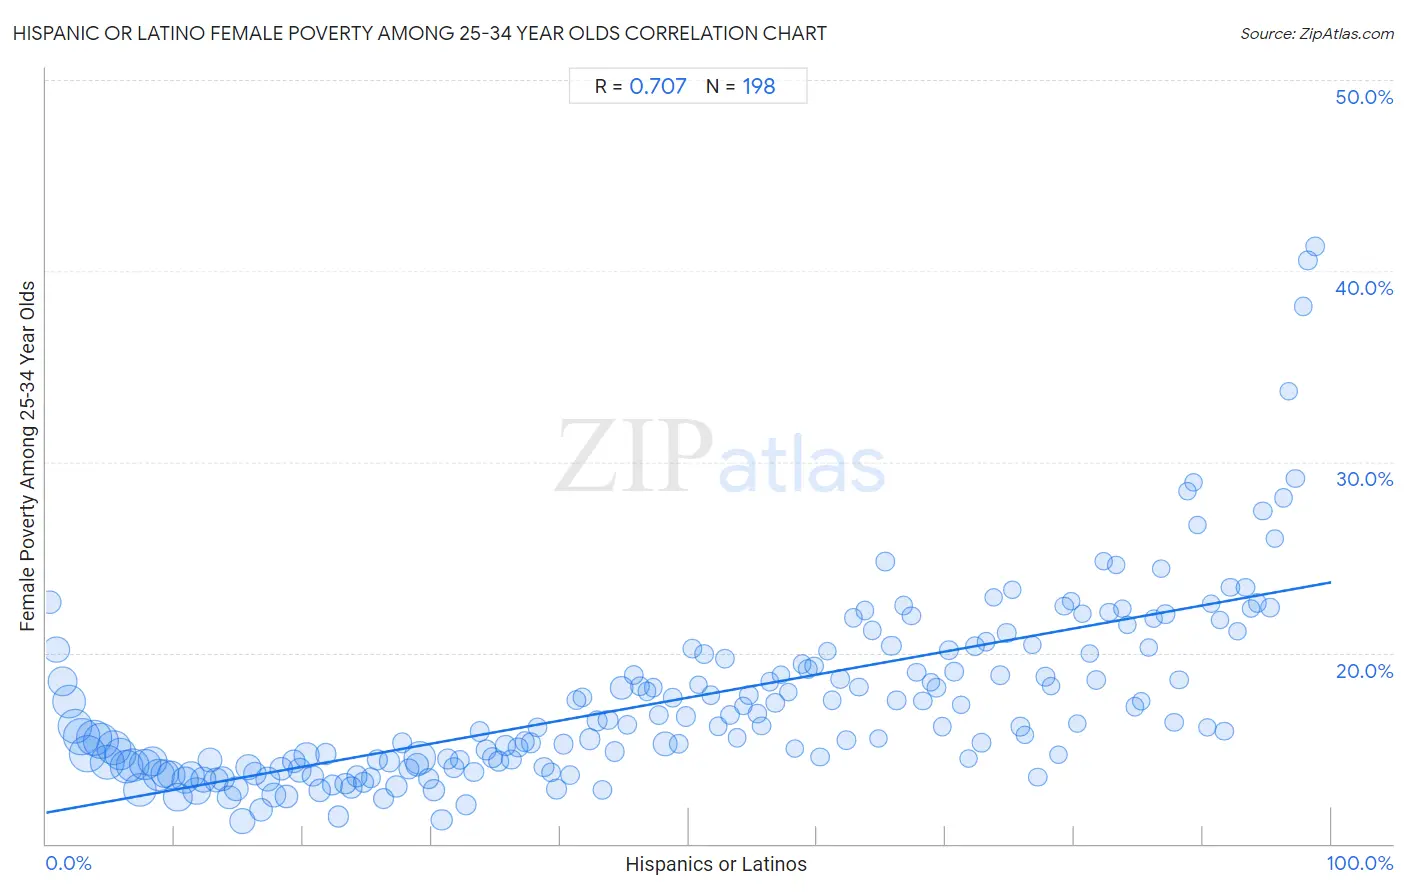 Hispanic or Latino Female Poverty Among 25-34 Year Olds